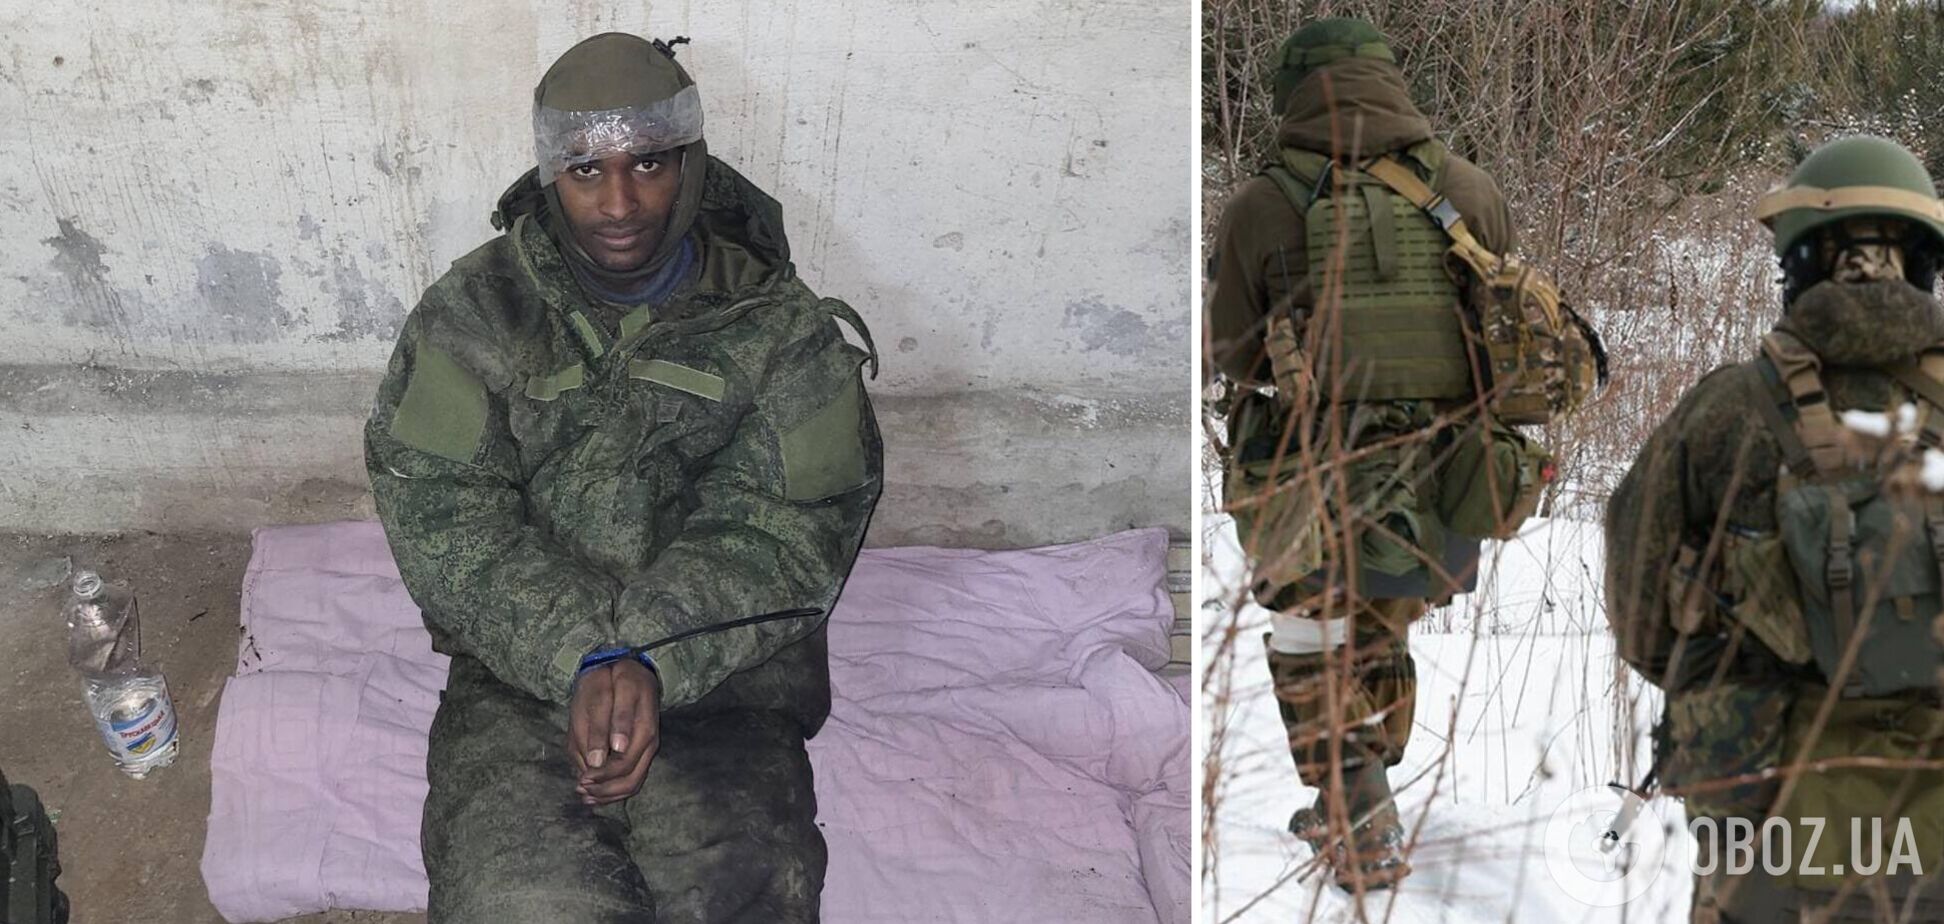 Сомалієць здався у полон ЗСУ і розповів про знущання в армії РФ. Фото